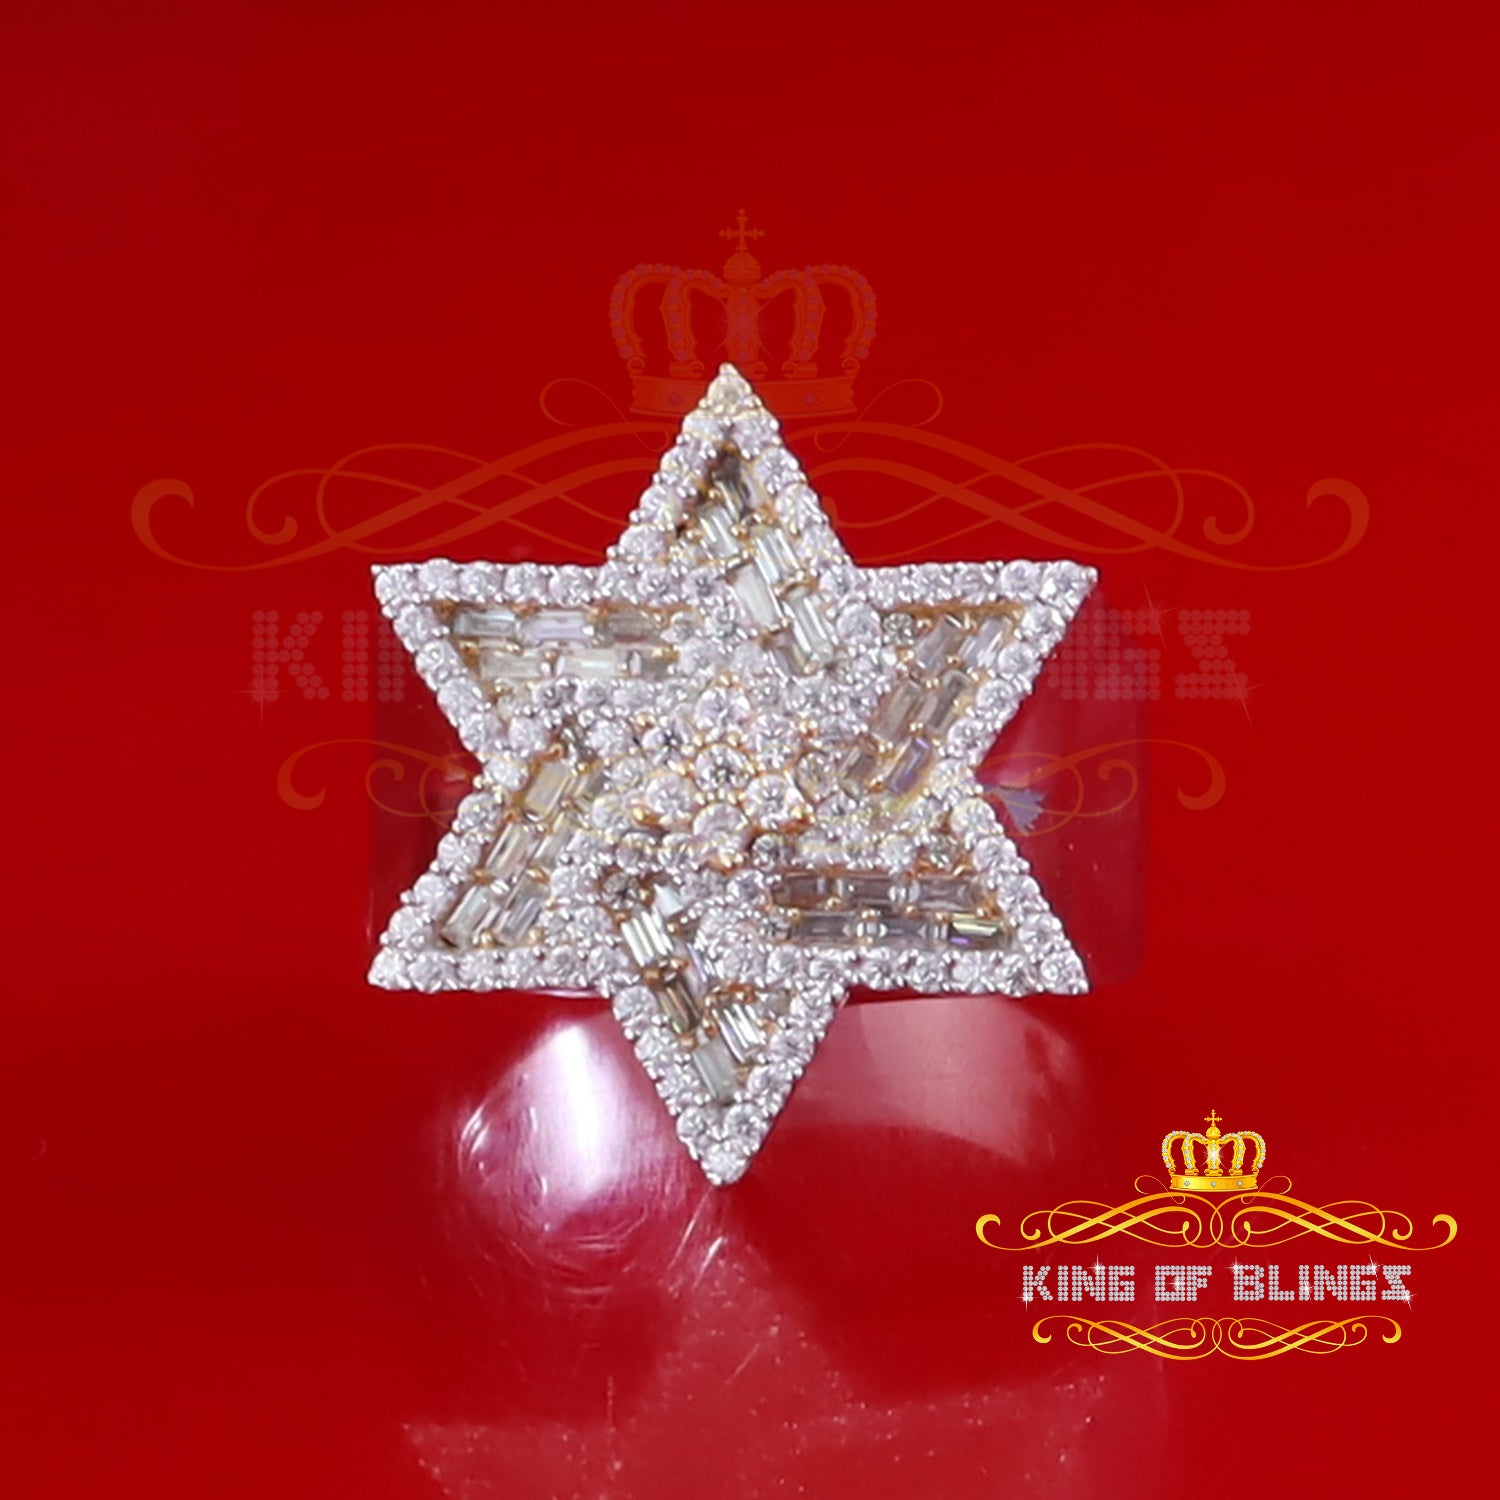 King of Bling's 925 Silver Moissanite White 2.00ct Baguette David Star Ring Sz 9 for Men's VVS D KING OF BLINGS